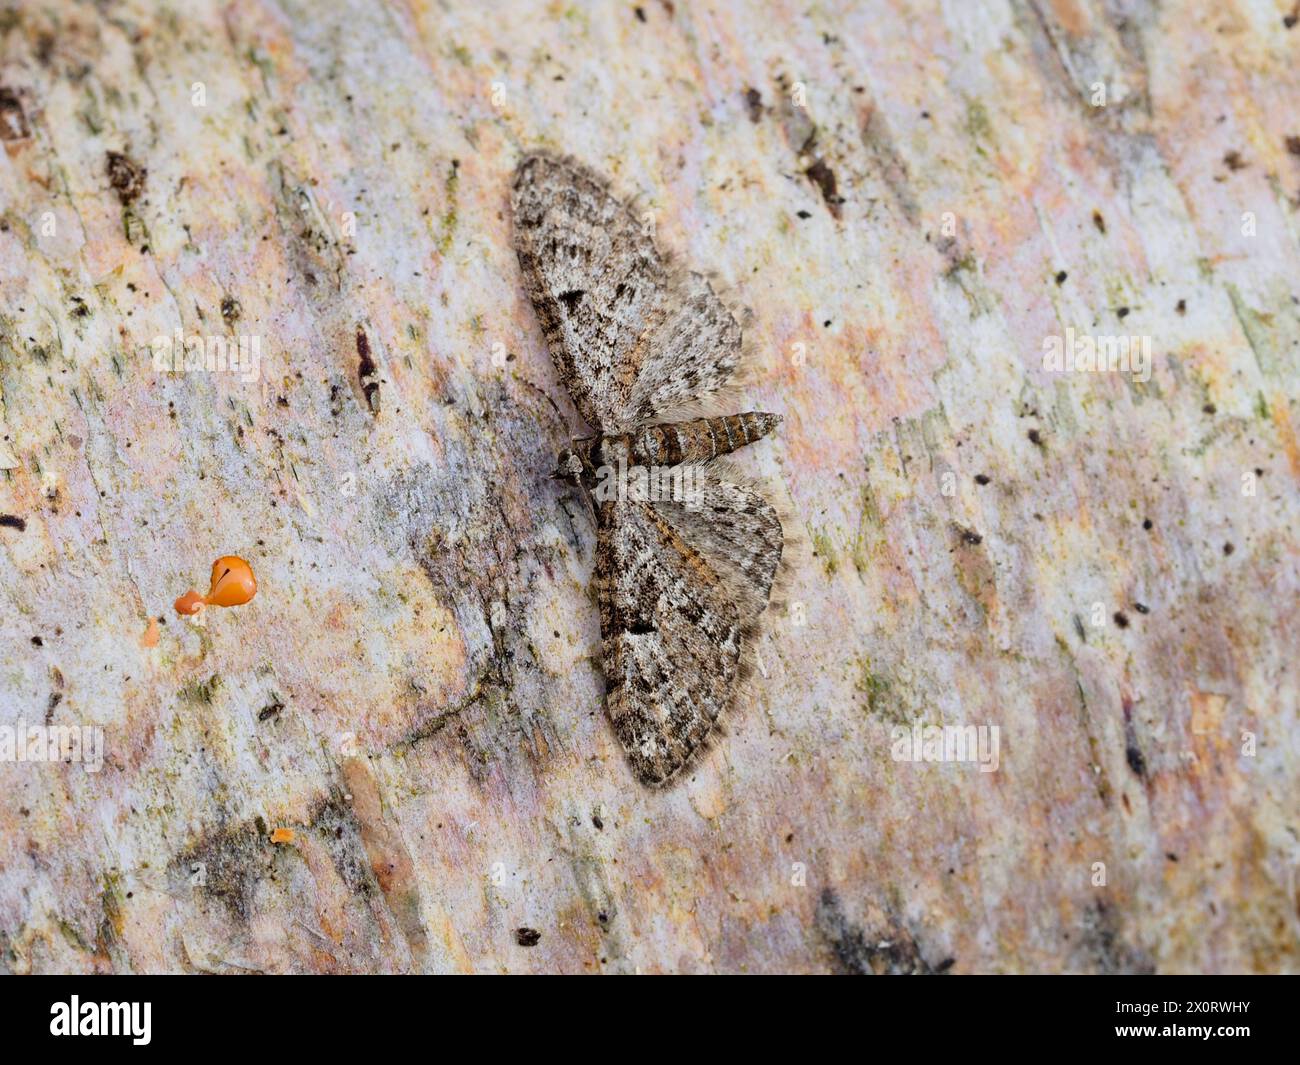 Une teigne de carlin de chêne, Eupithecia dodoneata, reposant sur une bûche de bouleau argenté. Banque D'Images